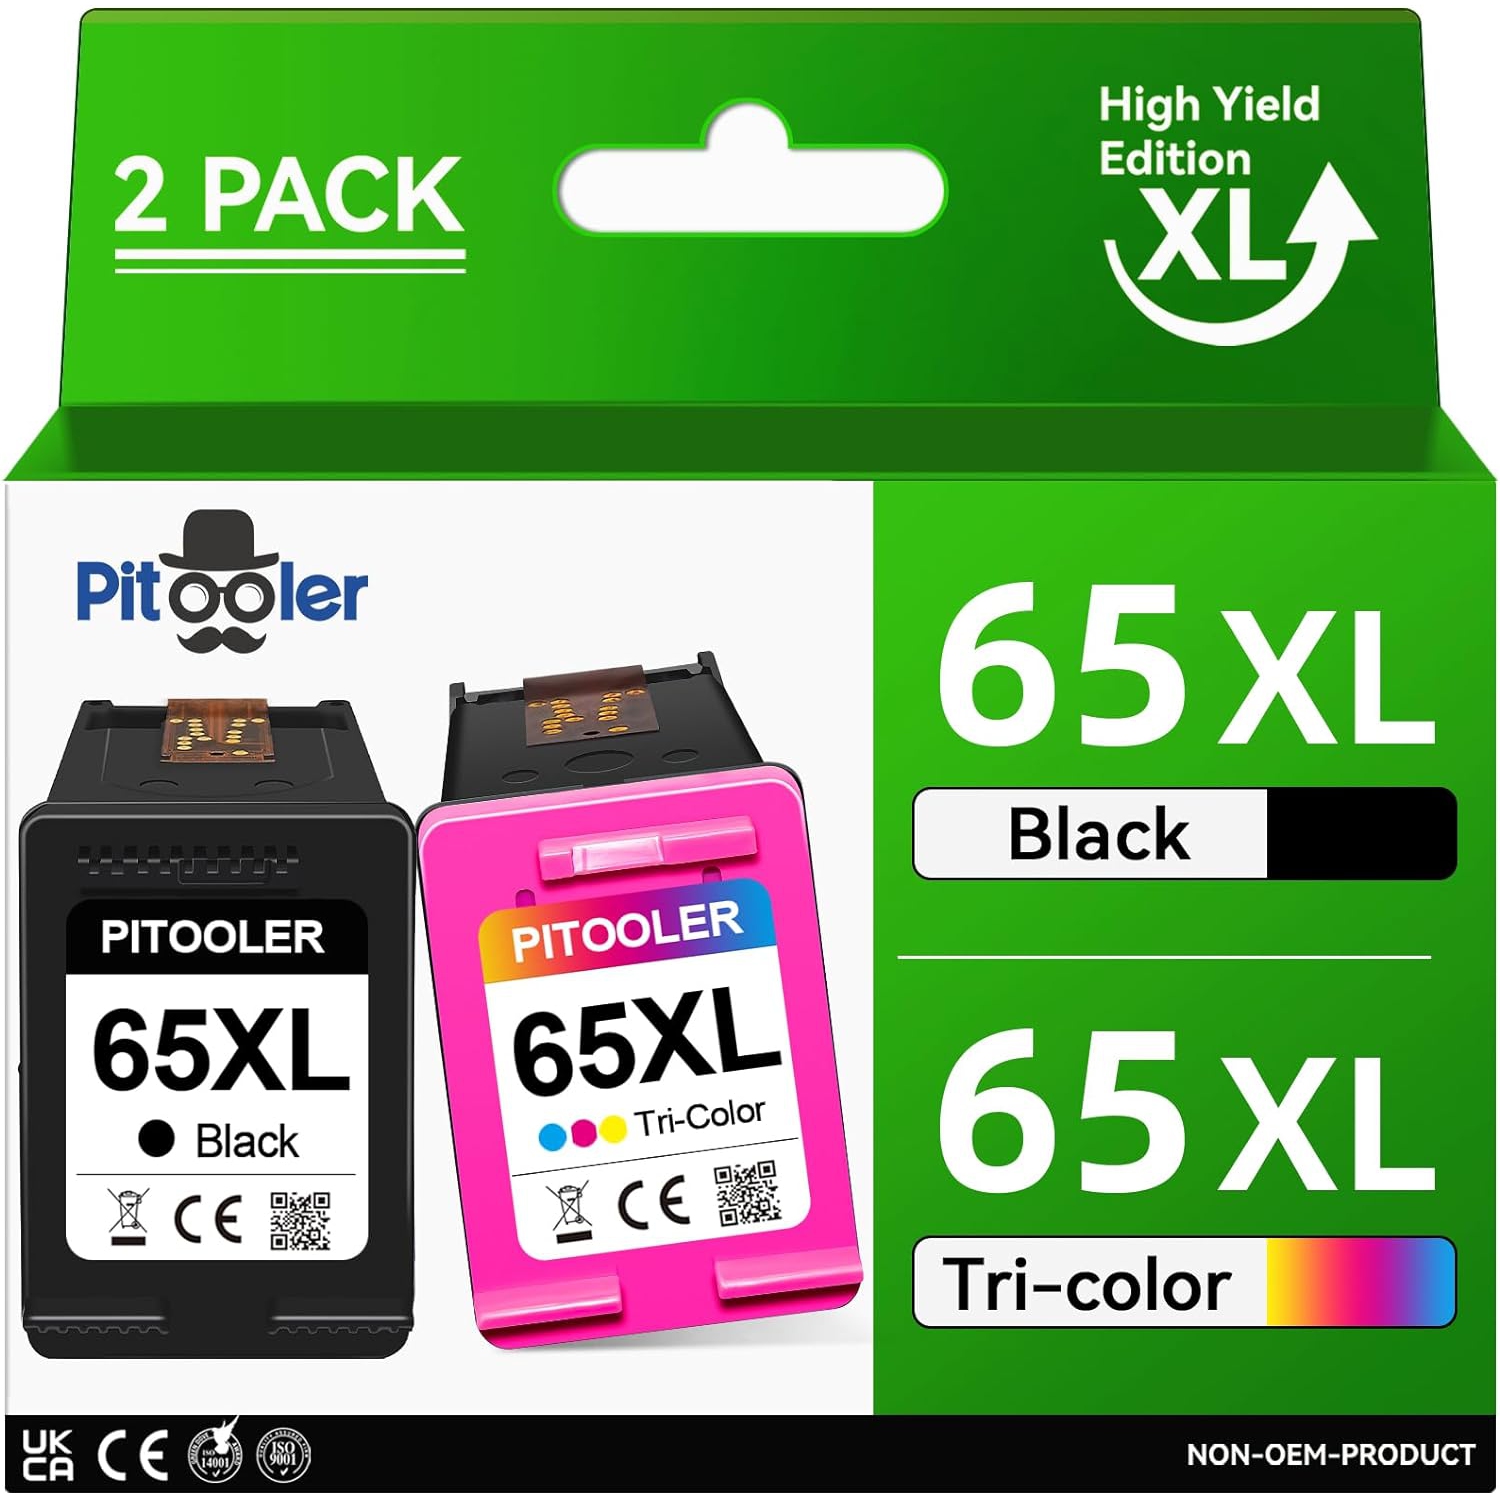 High Yield for HP Ink 65 XL, for HP 65/65XL Ink Cartridge Black and Color HP65, Compatible for HP DeskJet 3755, Envy 5055, DeskJet 3752 2655 2600 2652 3772 3752 3700, Envy 5010 50